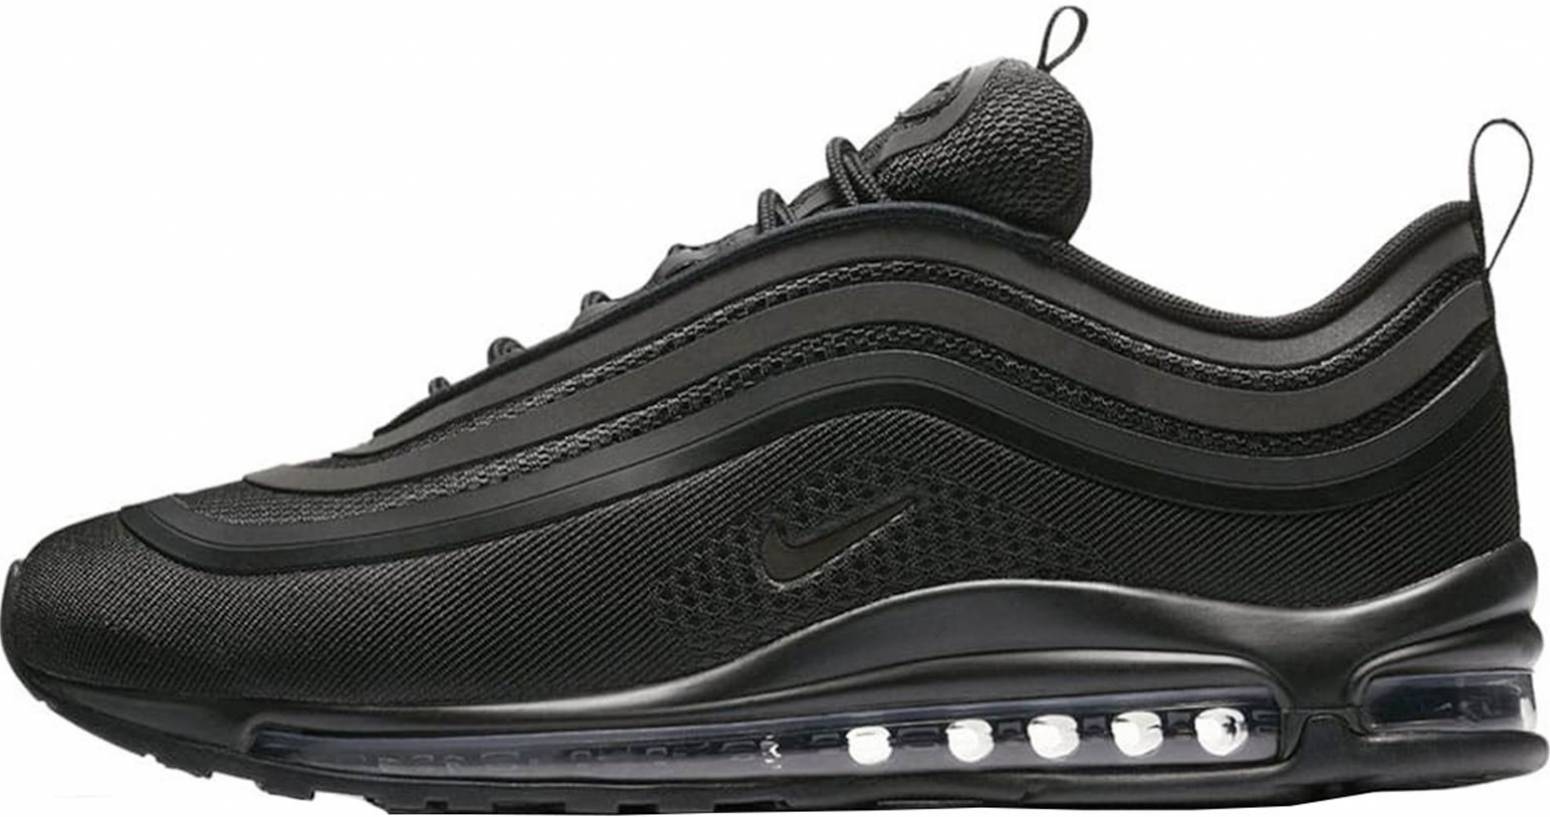 Nike Air Max 97 Ultra 17 sneakers in grey black | RunRepeat